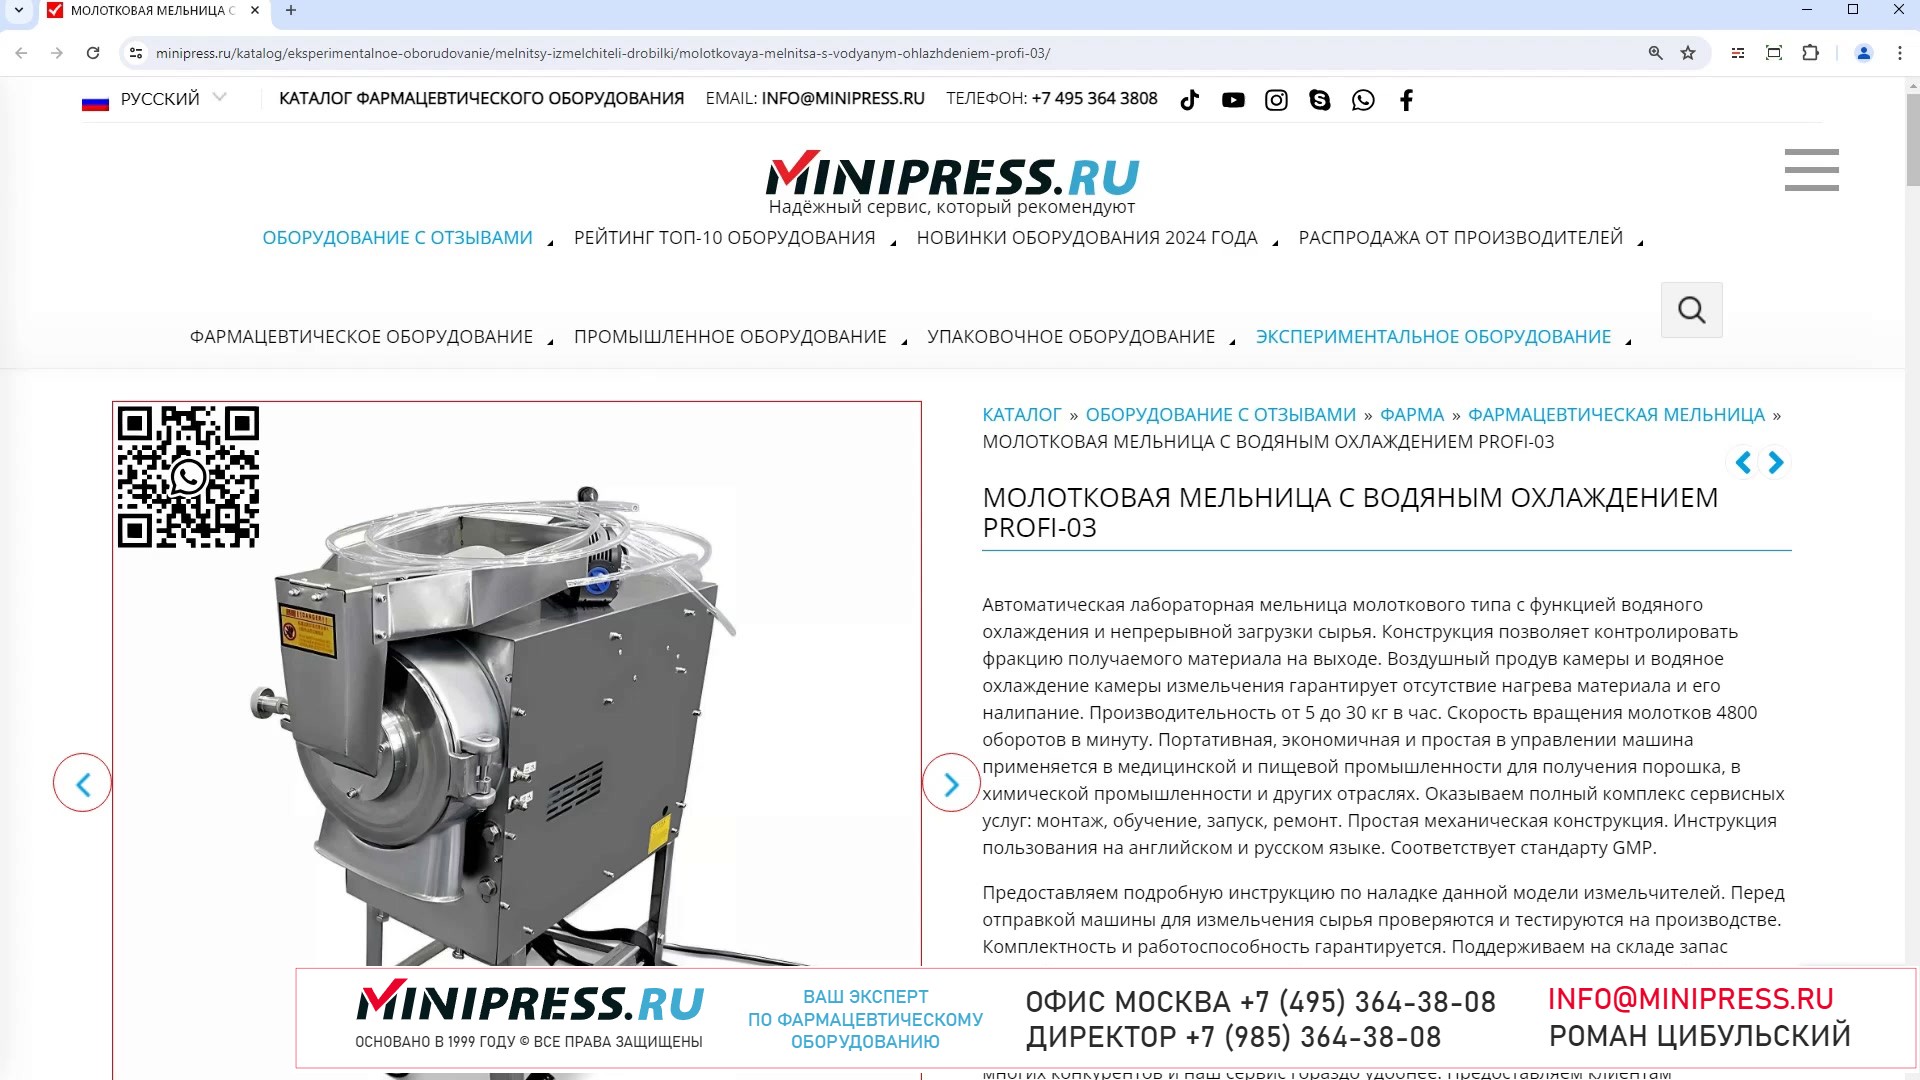 Minipress.ru Молотковая мельница с водяным охлаждением  PROFI-03